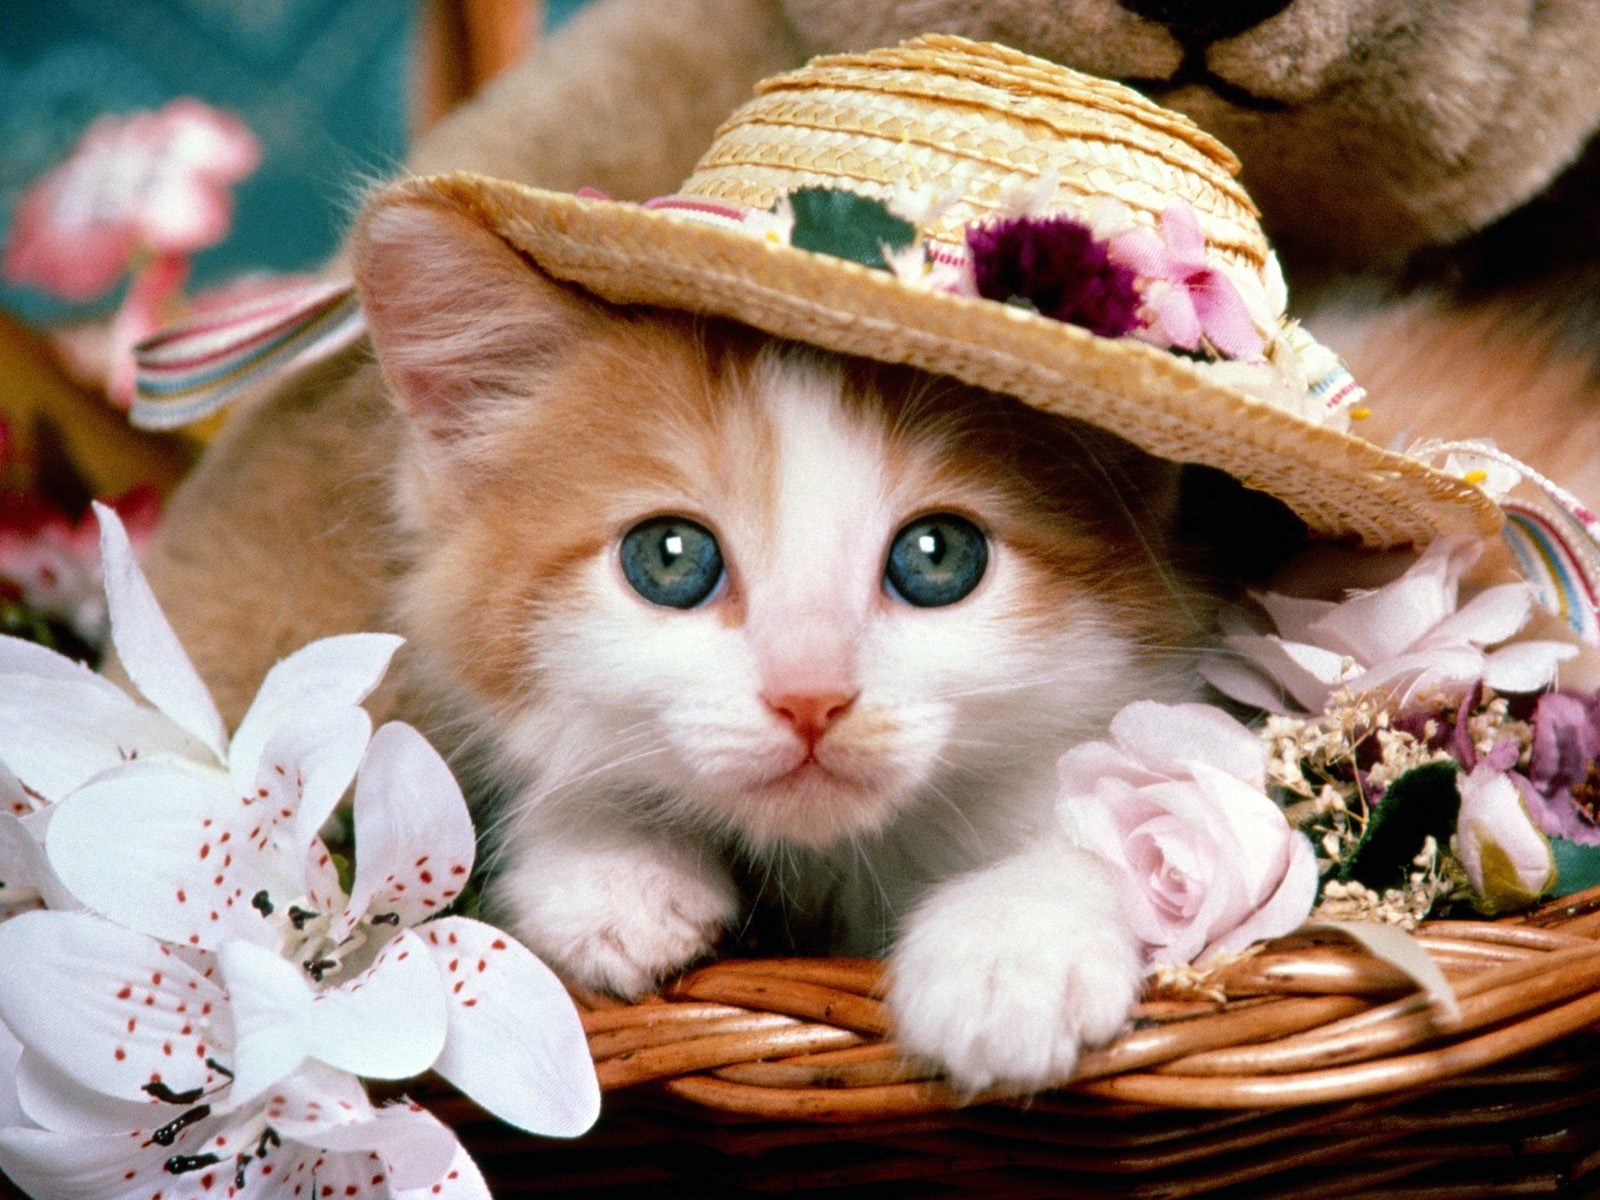 عکسهای گربه های ملوس و زیبا